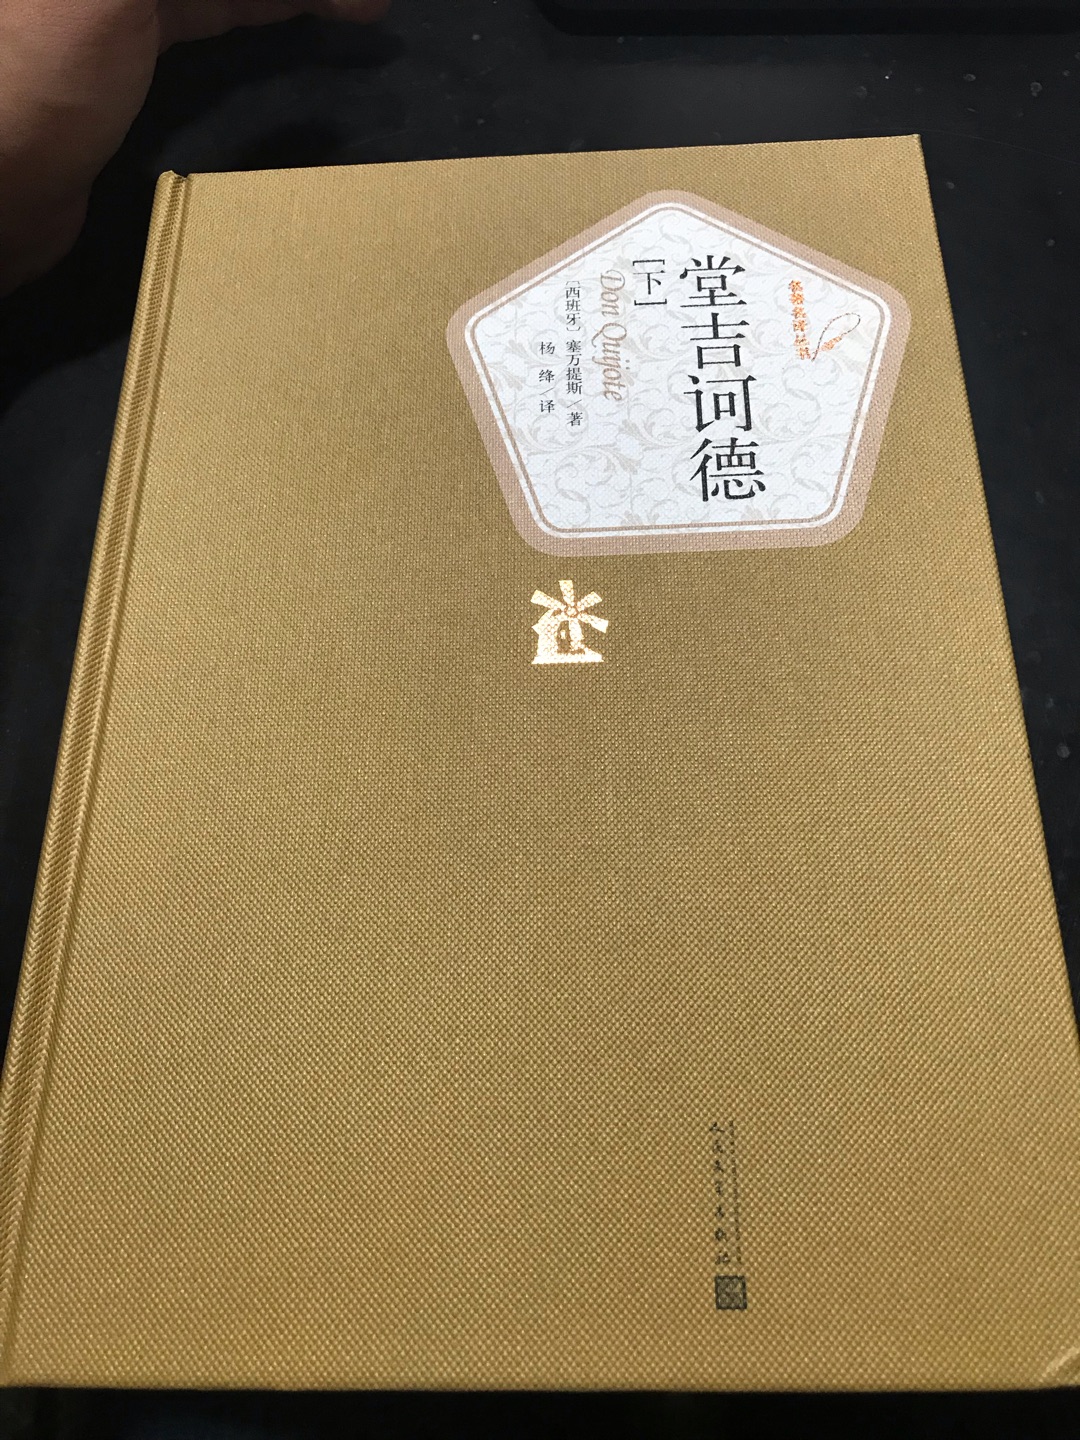 杨绛先生的译本非常好。装帧精美，印刷清晰。就是快递把书角磕碰了。心疼啊。